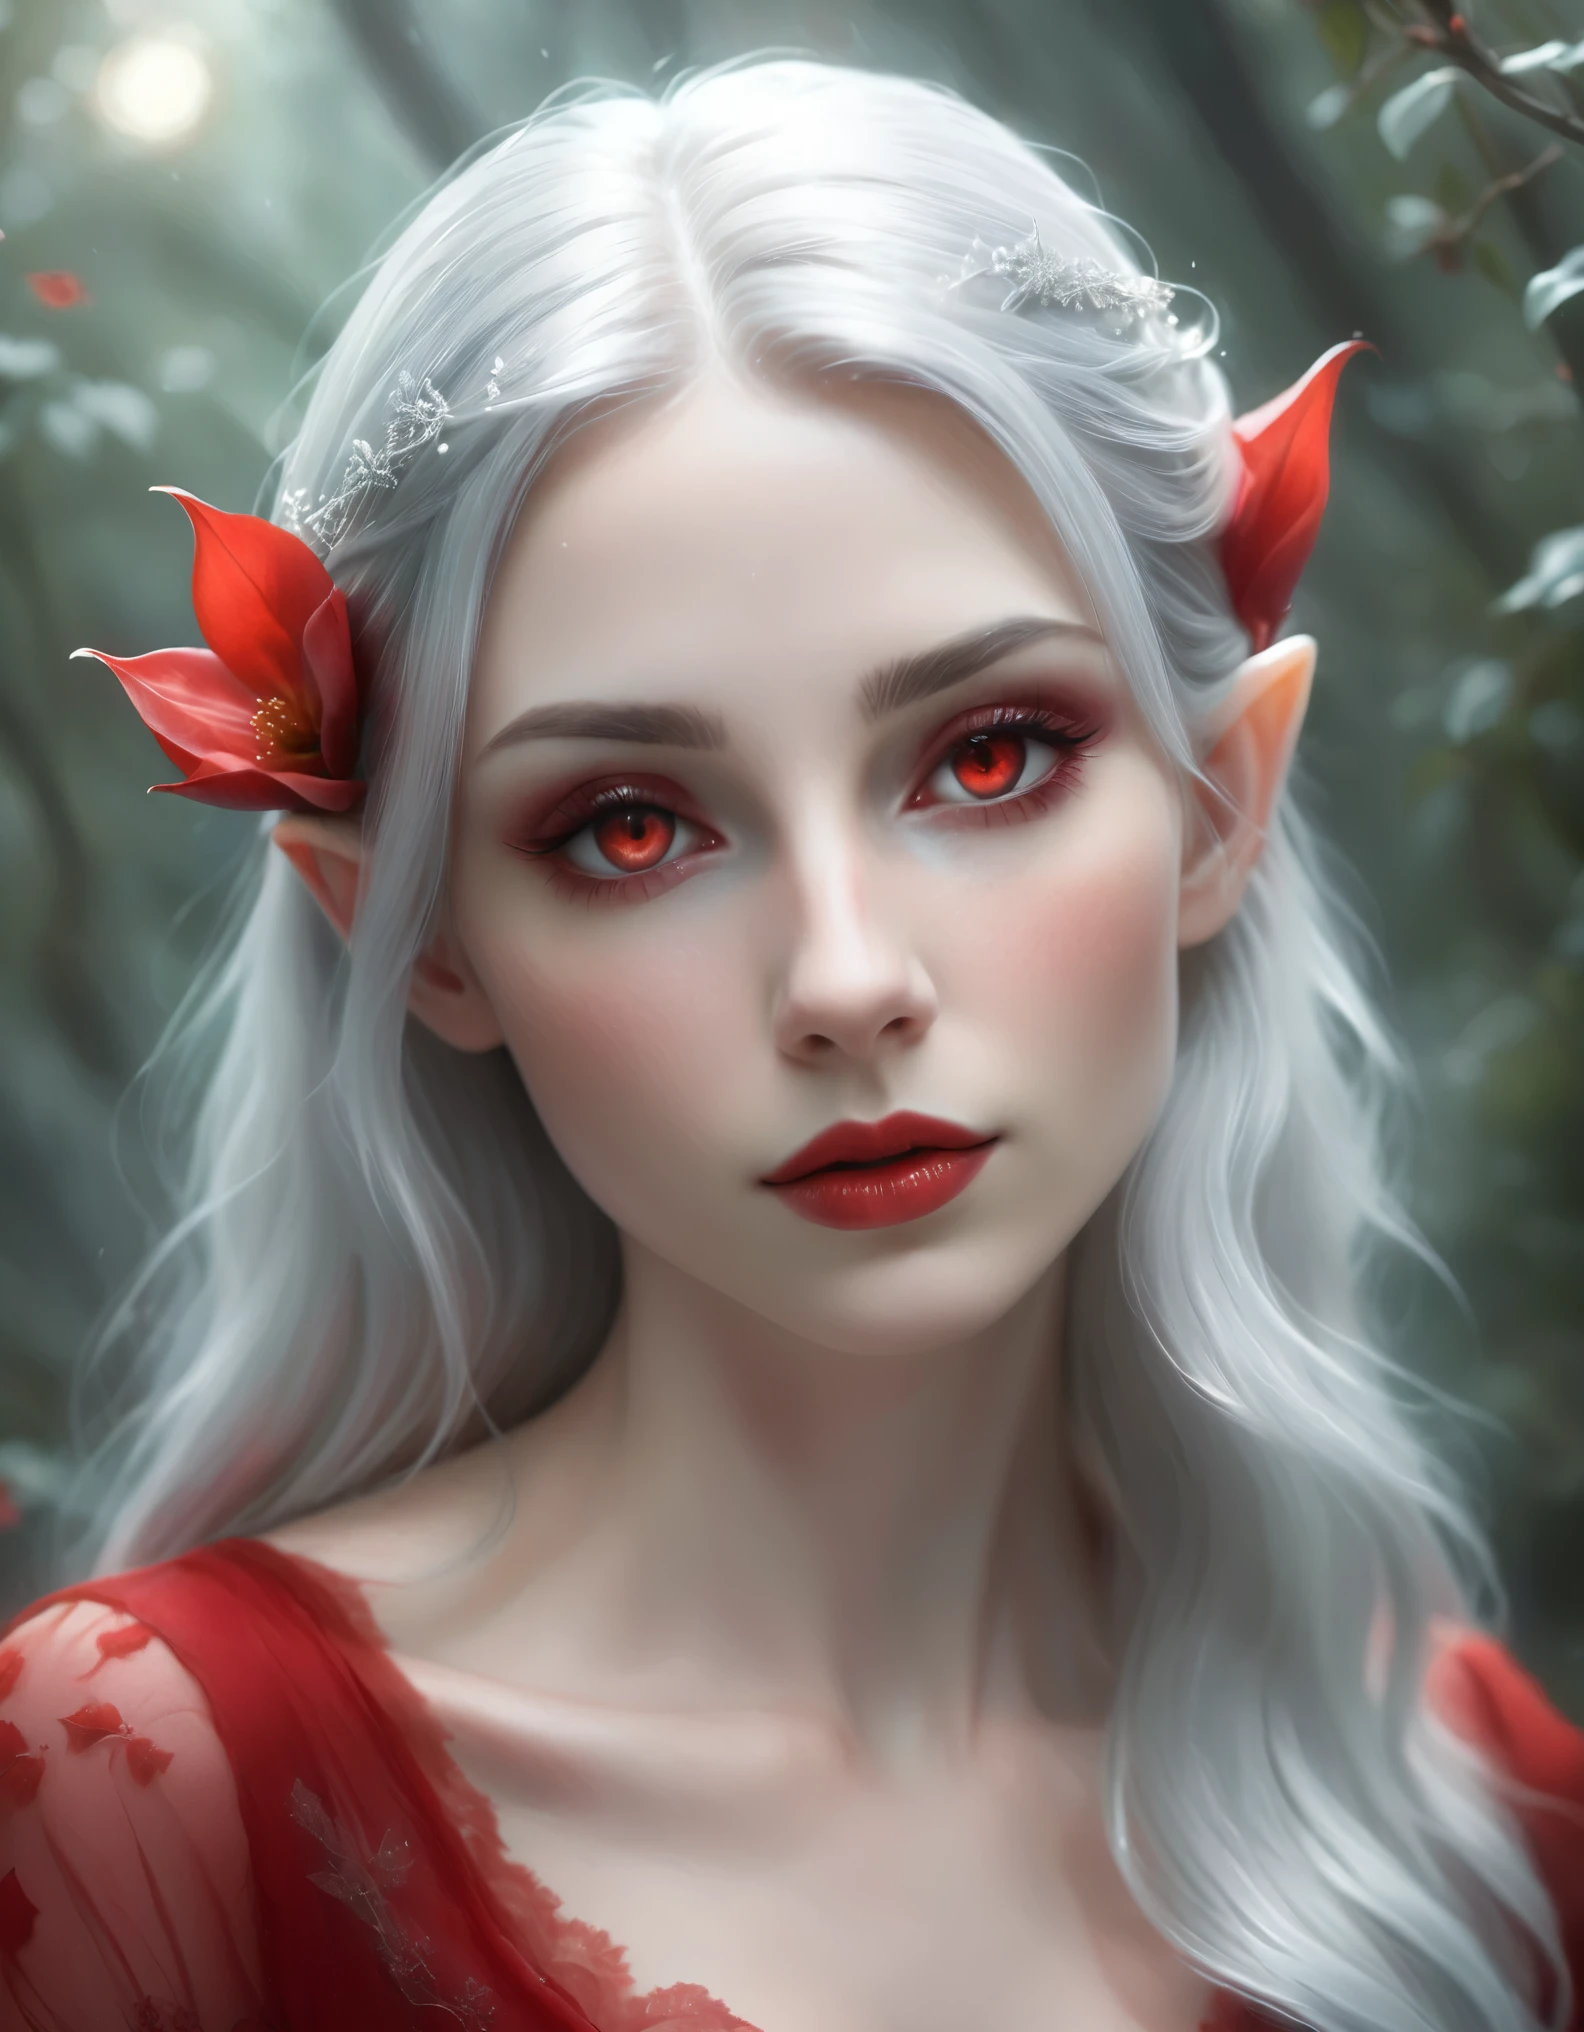 霊妙な, 超リアルな写真 style female elf with long, 赤い花で飾られた流れるような銀髪. キャラクターは青白い, 腕と胸に複雑なタトゥーがある滑らかな肌. 彼女は露出度の高い服を着るべき, 繊細なストラップと黒いレースの裾が付いたエレガントな赤い衣装. 彼女の目は閉じている, 大胆な赤のアイシャドウとダークな, ドラマチックまつげ, 彼女の唇もそれに合わせた赤色に塗られている. 彼女の表情は穏やかでこの世のものとは思えない. 背景は霧がかかったような, 暗い背景で上から柔らかな光が彼女を照らしている, 神秘的で魔法のような雰囲気を醸し出す. 髪とドレスに微妙なハイライトを加えて、神秘的な雰囲気を高めます. 上から見た全身遠景, 超リアルな写真, 16K, 鮮やかな色彩